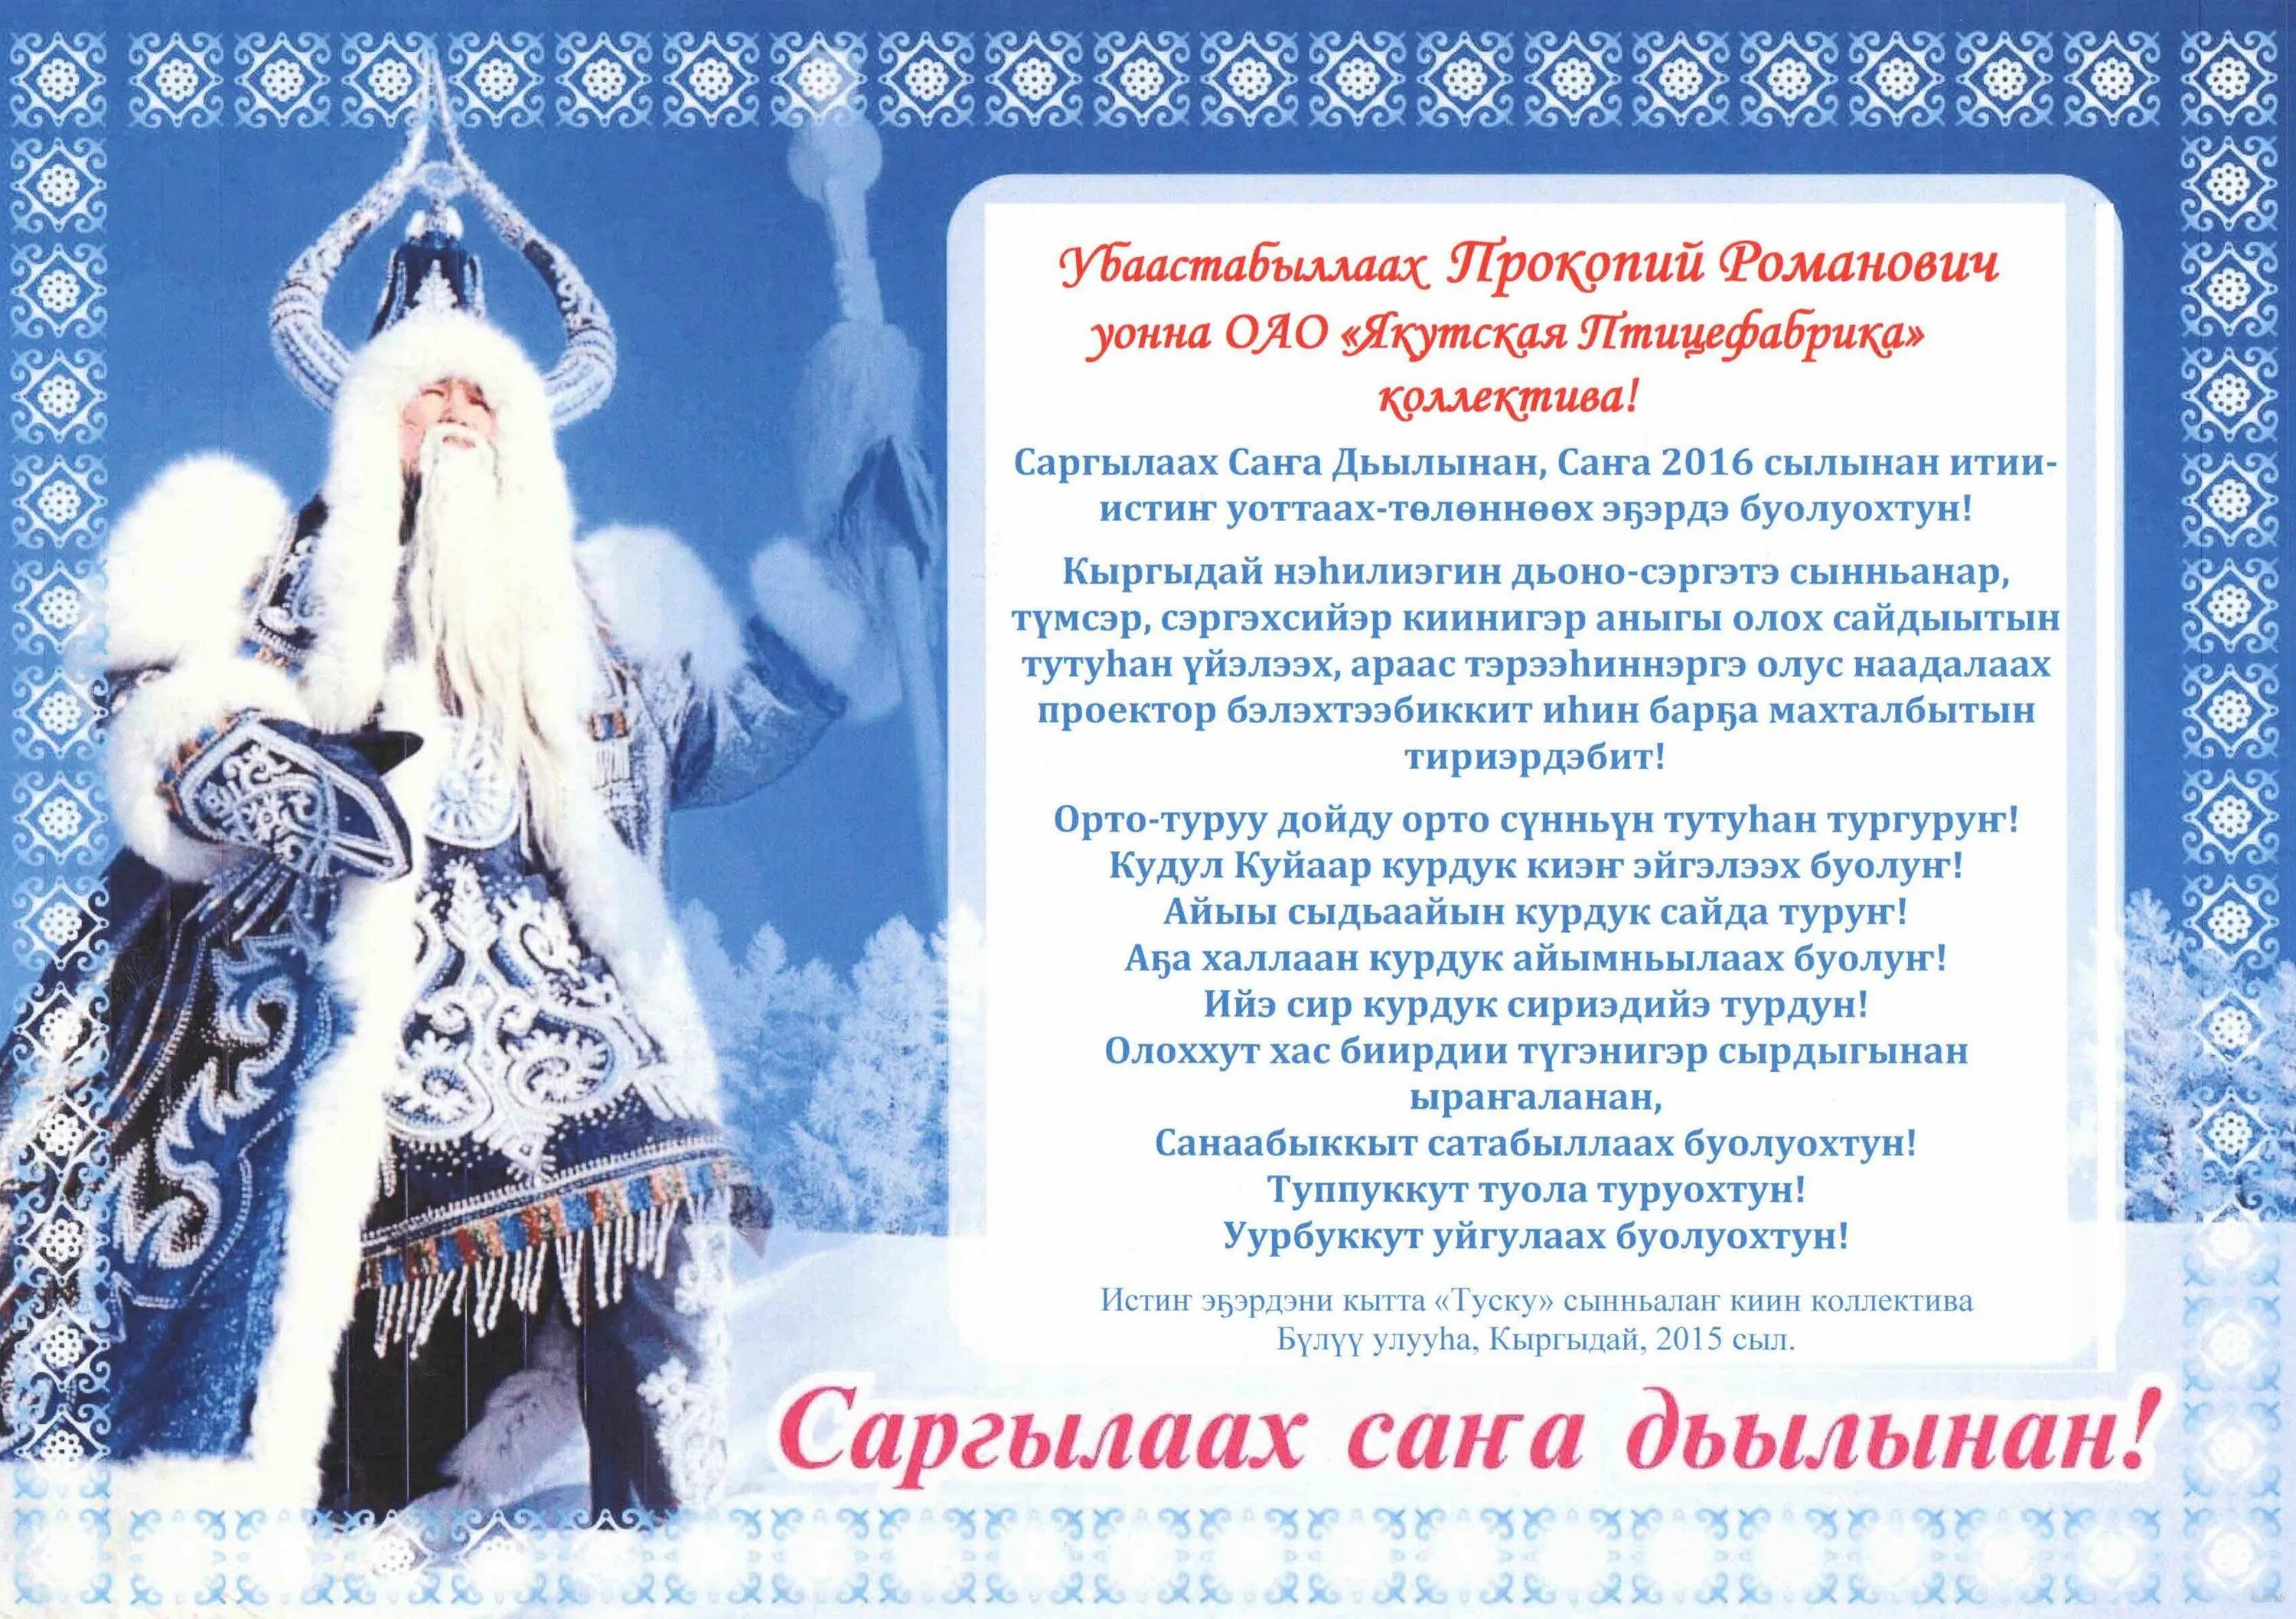 Сана дьылынан. Саргылаах Сана дьылынан. Поздравления на якутском языке. Якутские поздравления с новым годом.